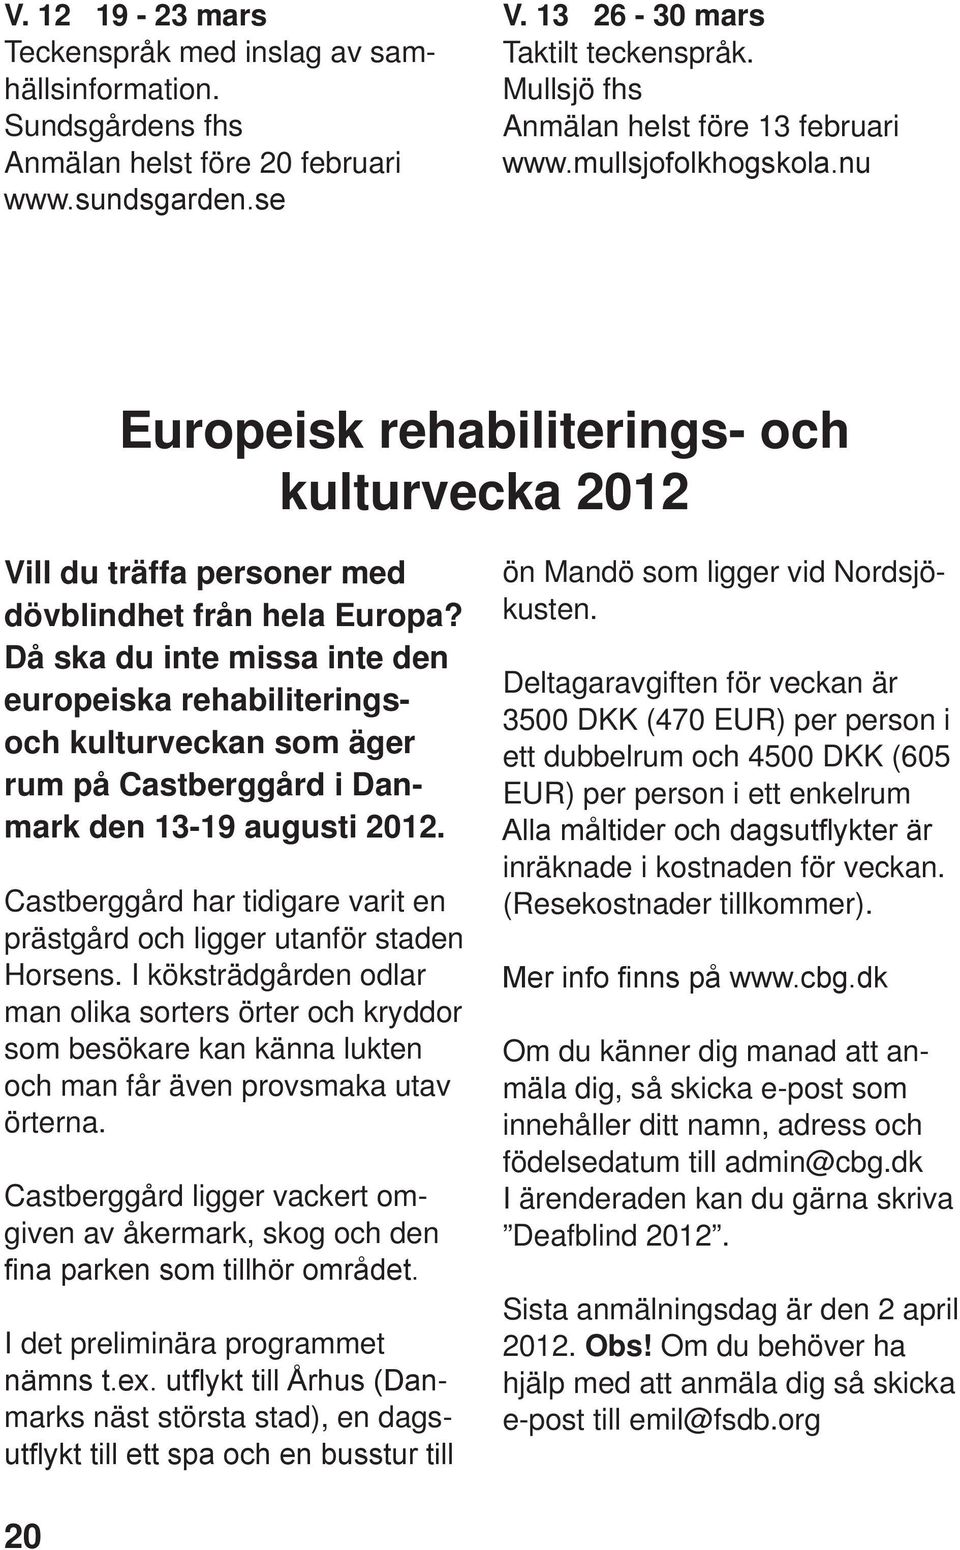 Då ska du inte missa inte den europeiska rehabiliteringsoch kulturveckan som äger rum på Castberggård i Danmark den 13-19 augusti 2012.